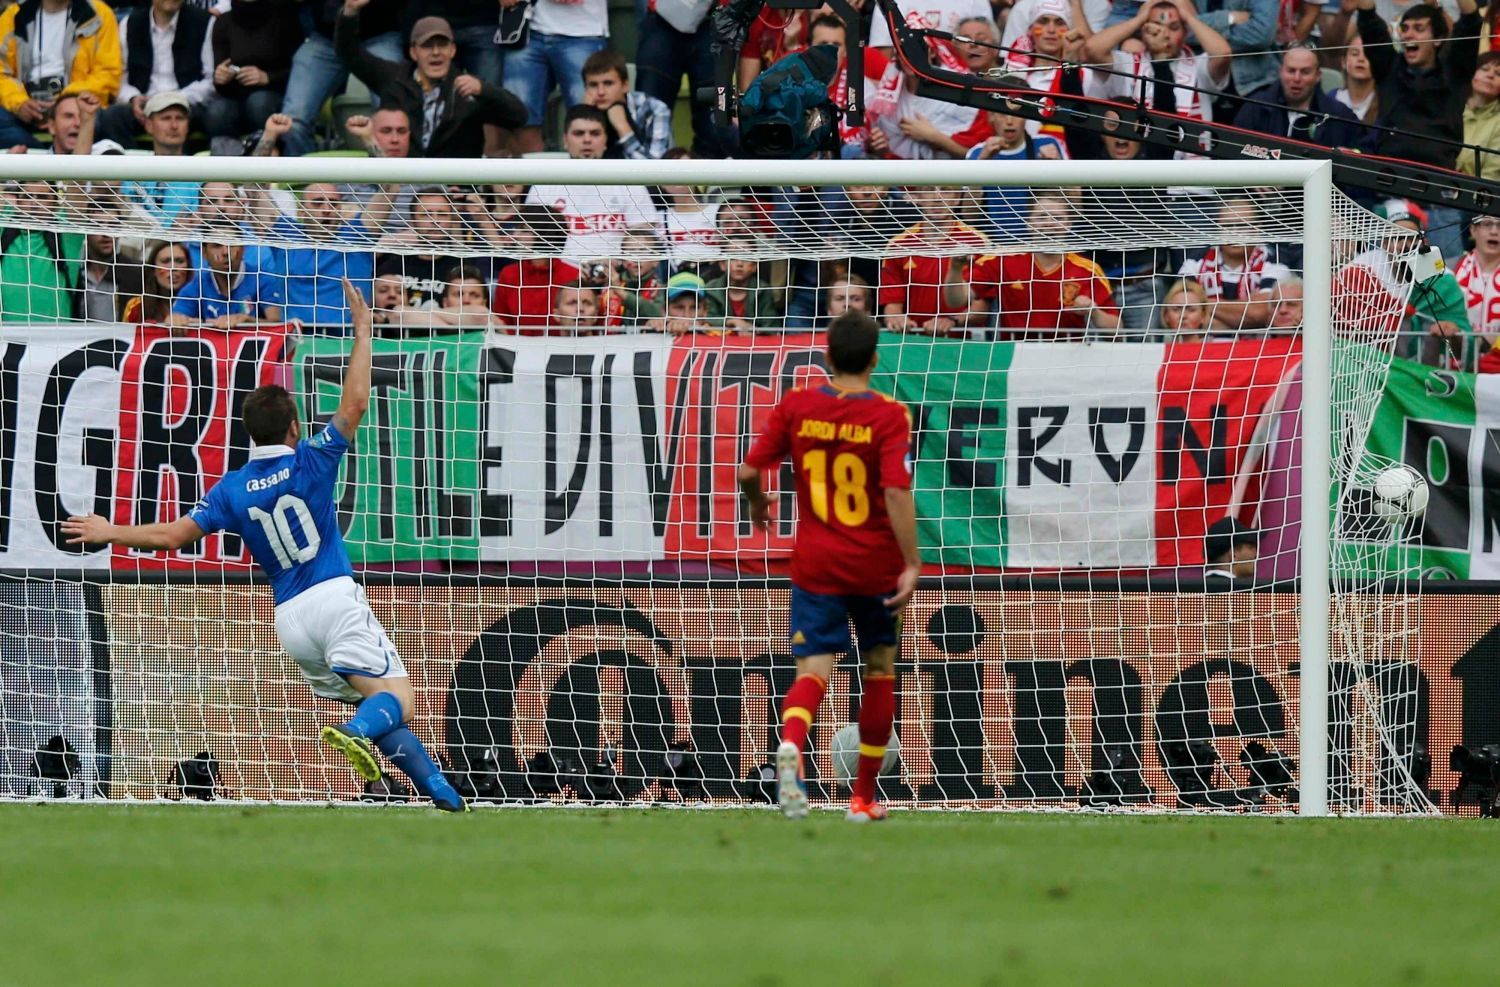 Antonio Cassano slaví gól v utkání základní skupiny mezi Španělskem a Itálií na Euru 2012